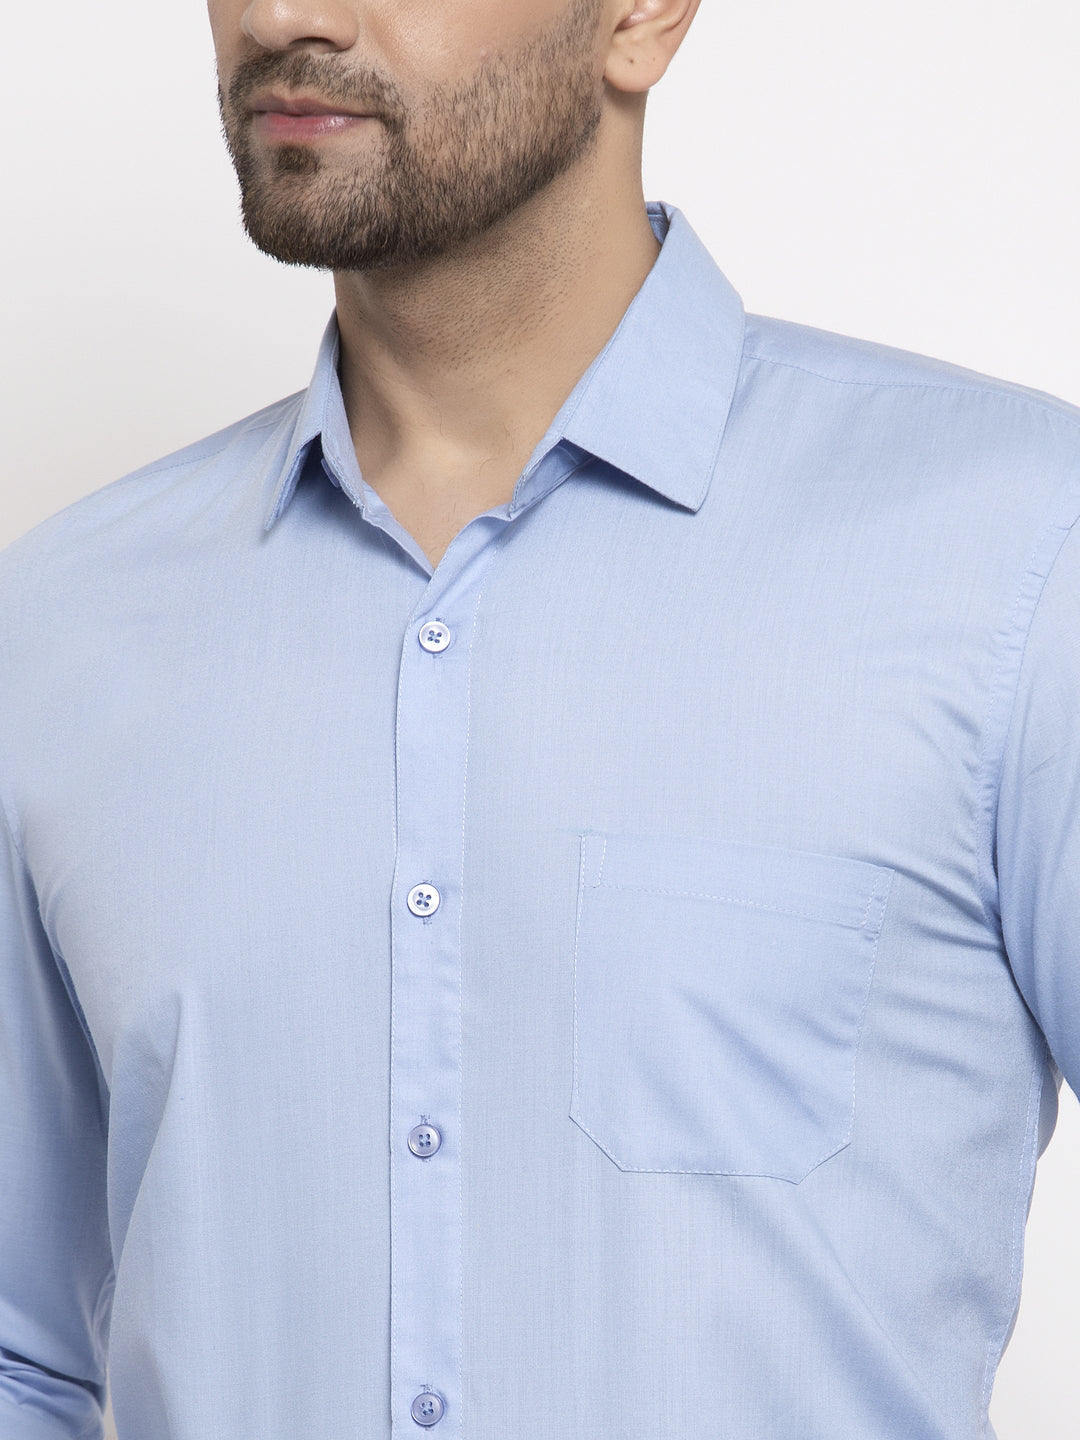 Men's Cotton Solid Firozi Blue Formal Shirt's ( SF 361Firozi ) - Jainish